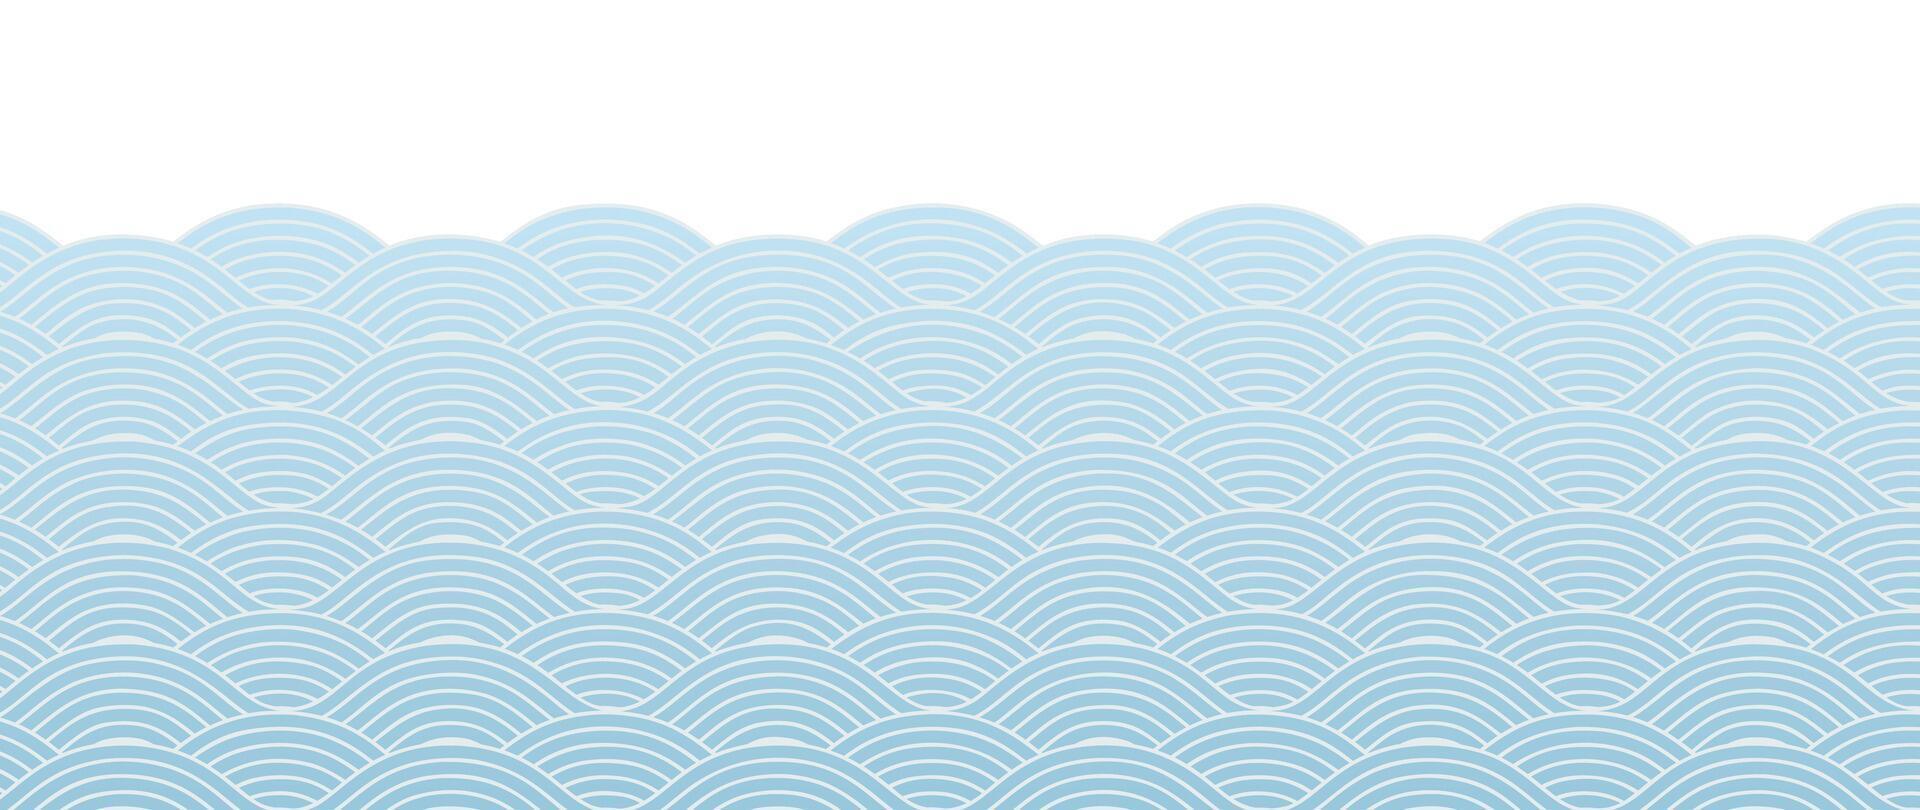 japanisch Blau Welle Hintergrund Vektor. Hintergrund Design mit Blau und Weiß nahtlos Ozean Welle Muster Hintergrund. modern Luxus orientalisch Illustration zum Abdeckung, Banner, Webseite, Dekor, Grenze. vektor